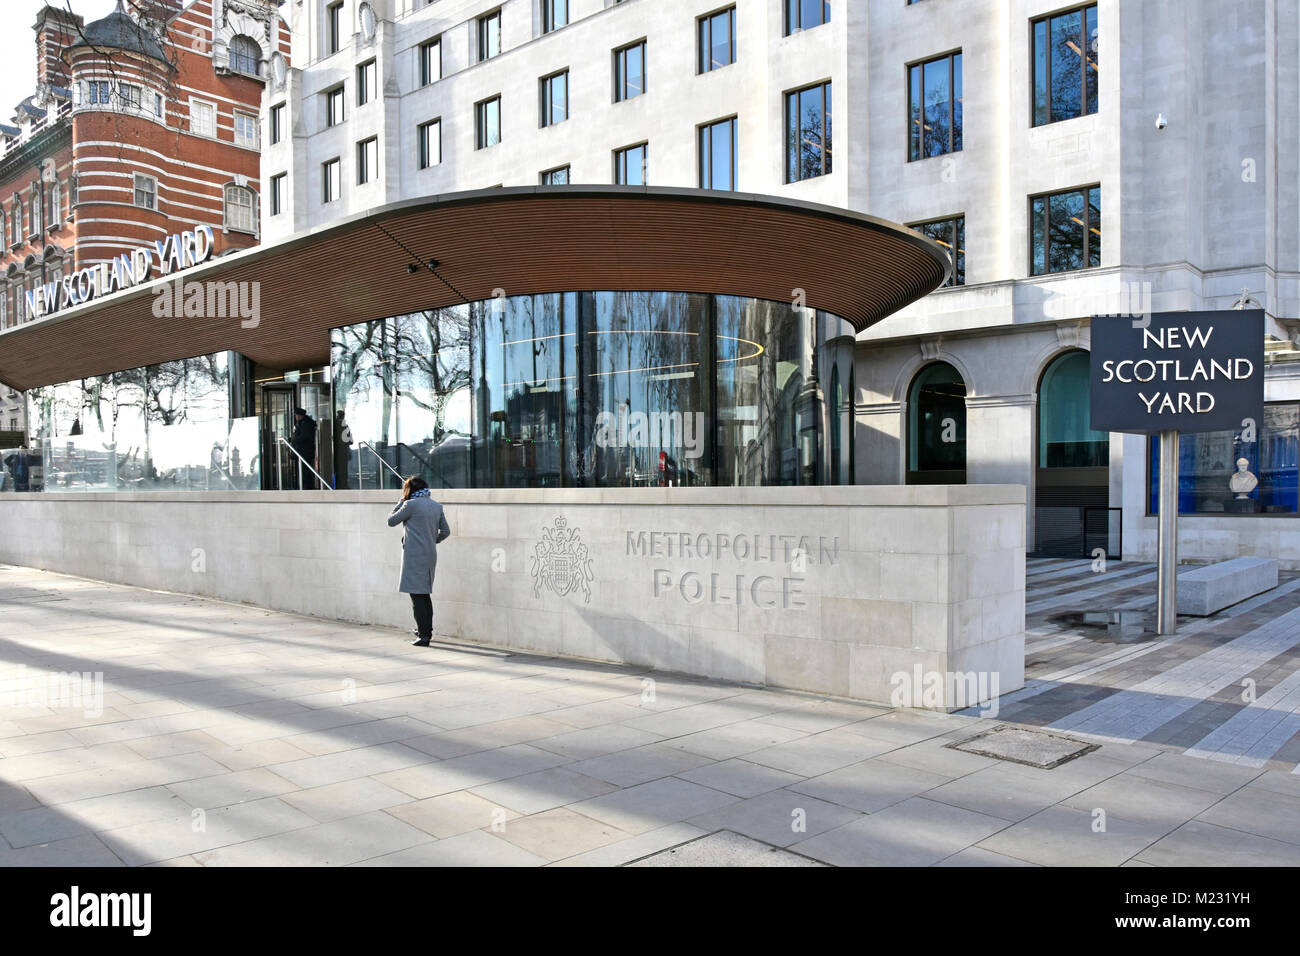 New Scotland Yard trasladó la sede de la Policía Metropolitana en el viejo edificio verde Curtis ahora reformado & Extended Victoria Embankment London UK Foto de stock